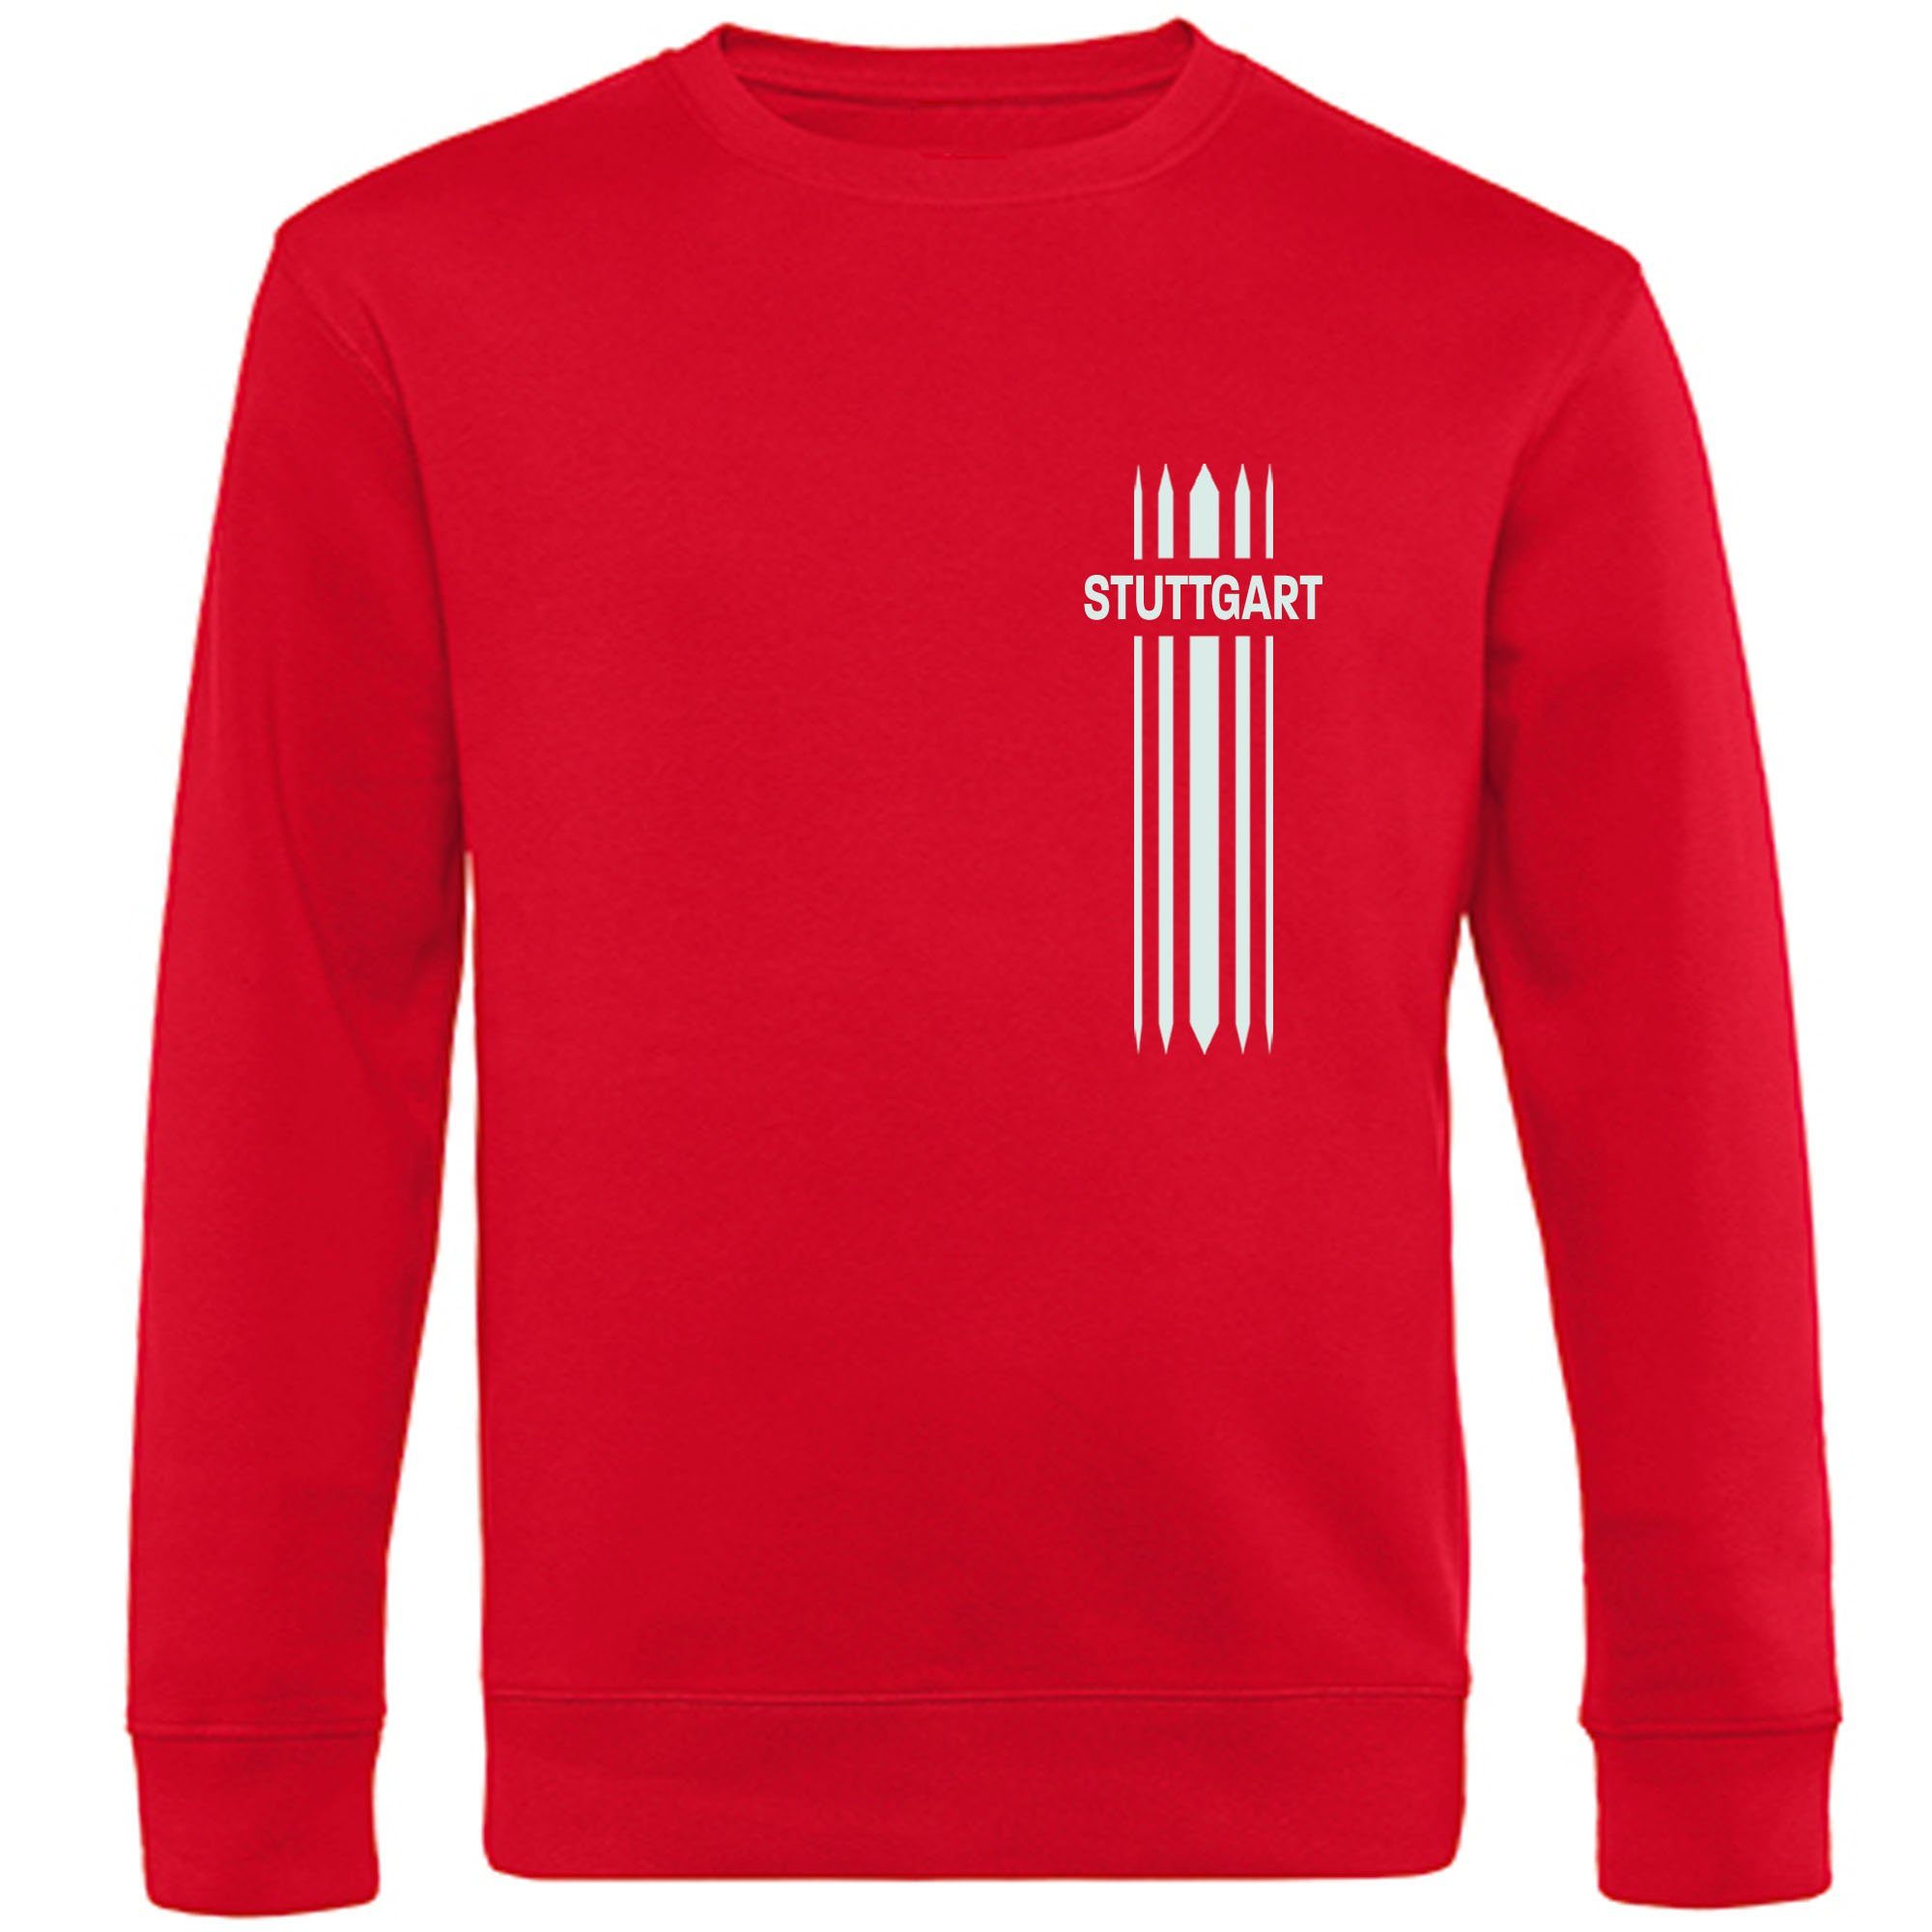 multifanshop Sweatshirt Stuttgart - Streifen - Pullover